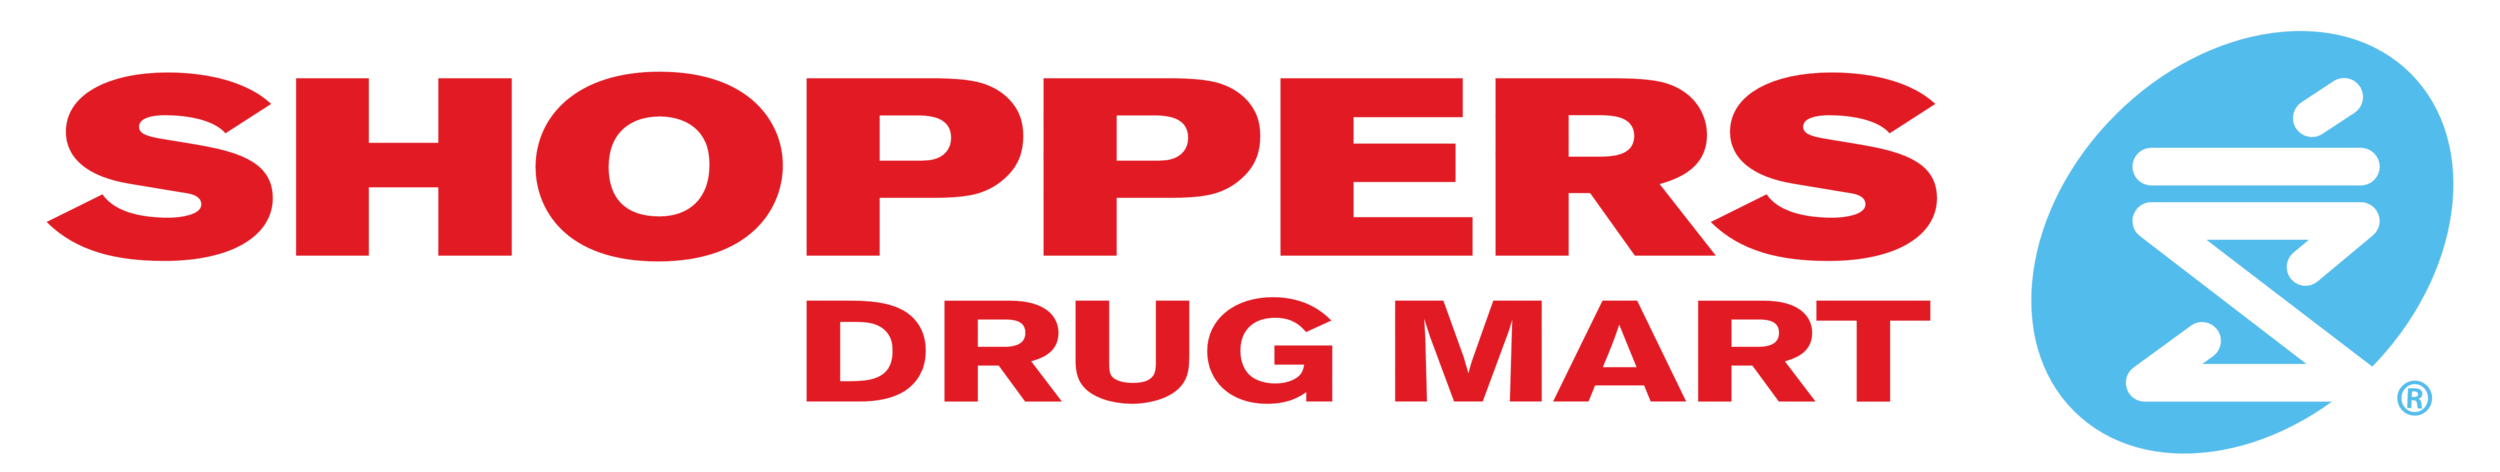 Shoppers_Drug_Mart_logo.png